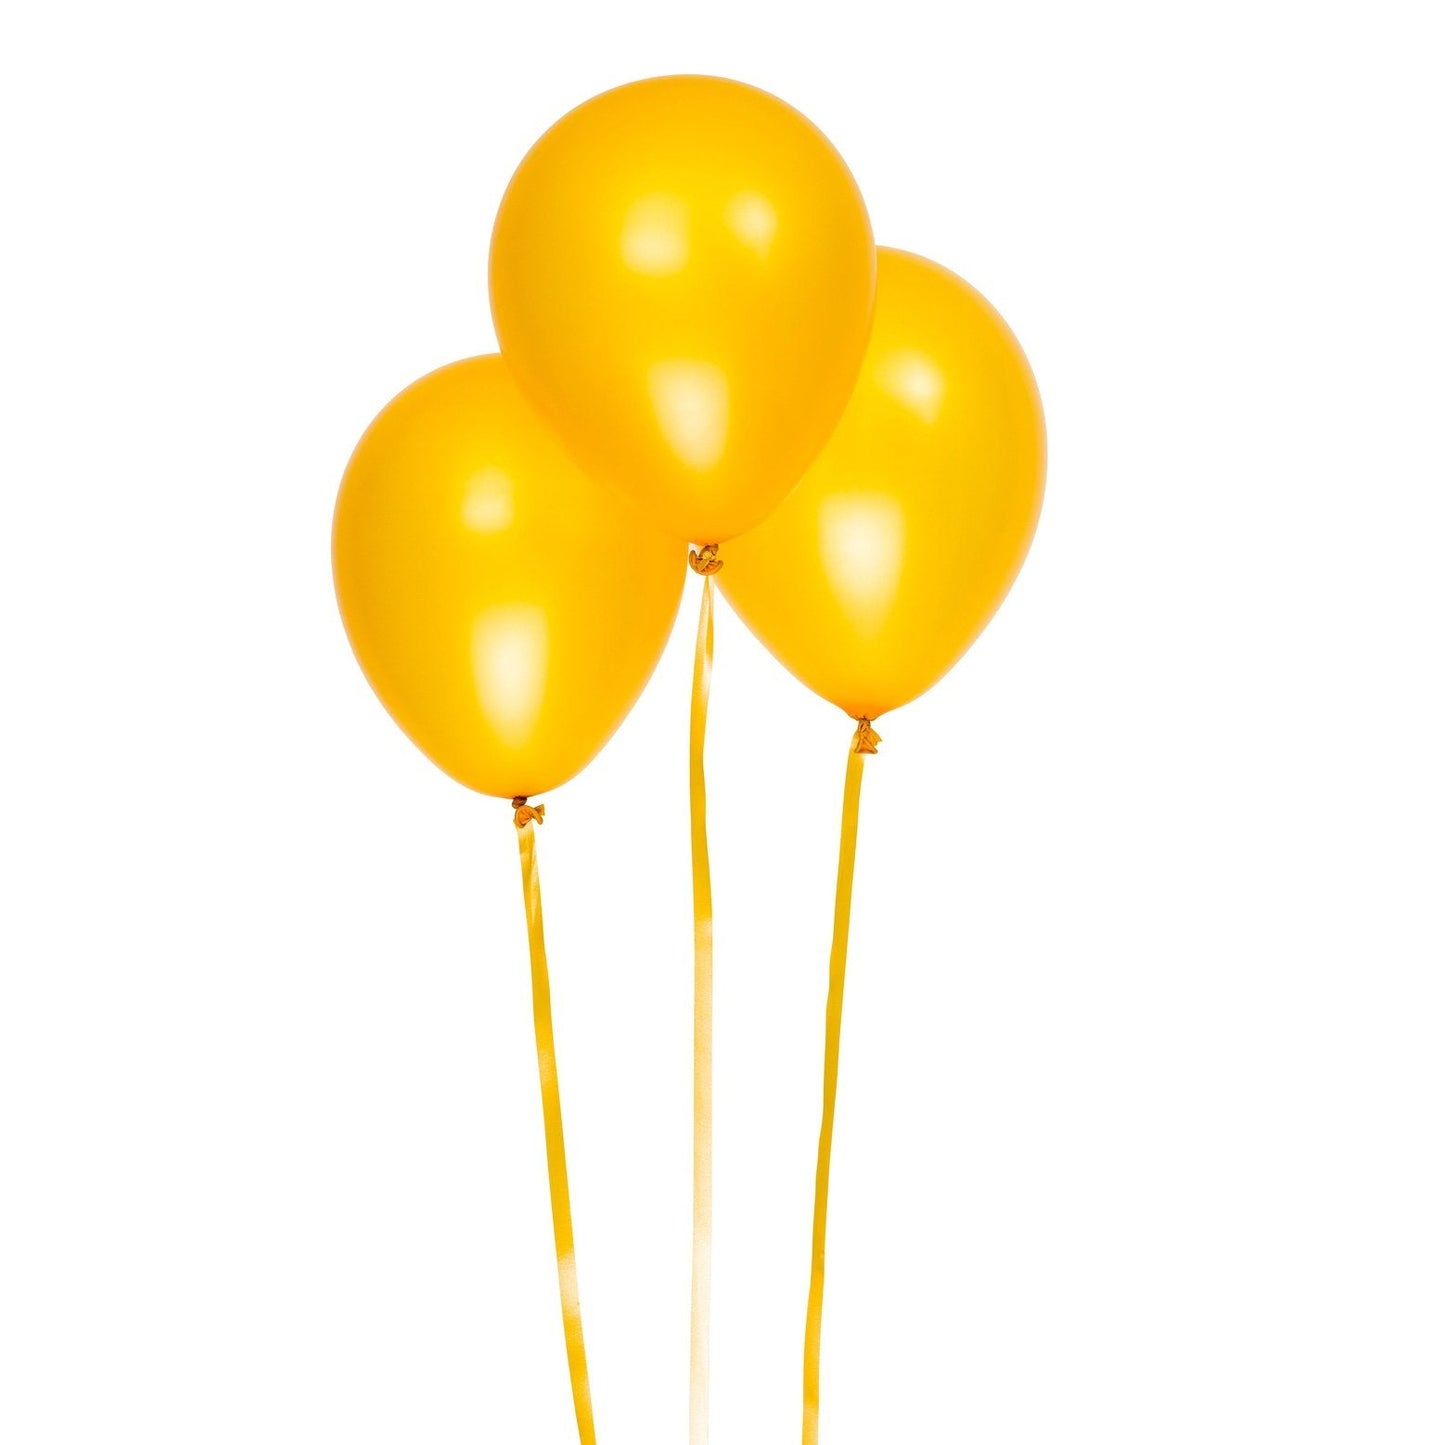 Metallicballonger 30cm, 6st, guld DesignHouse95 - Ballonggrossist - Designhouse95 - Grossist Ballonger - Snabba Leveranser - Engångsartiklar, Student, Jul, Nyår, Fest, Kalas